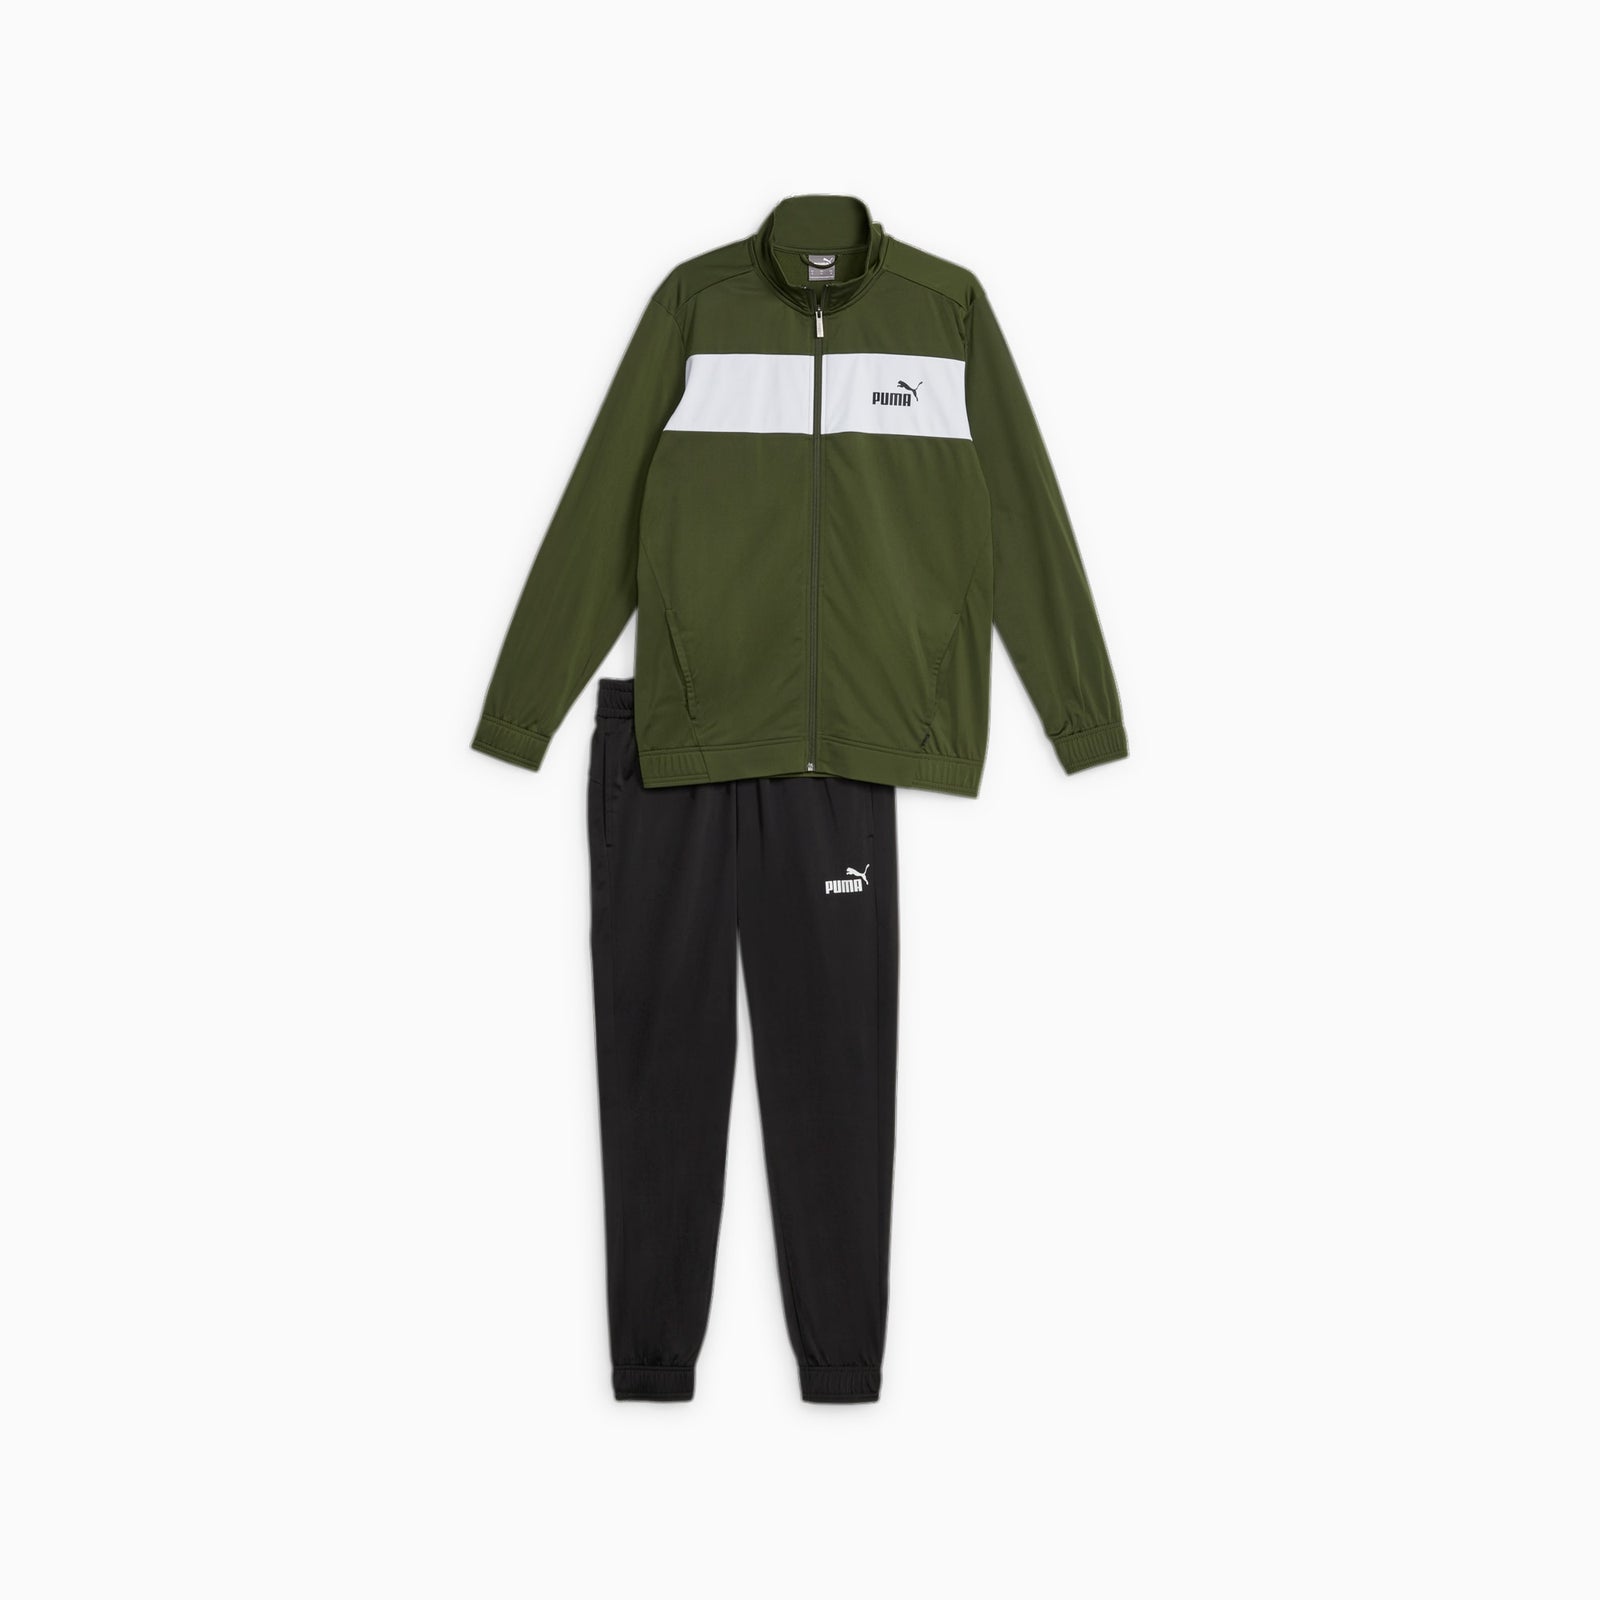 Puma sports apparel green